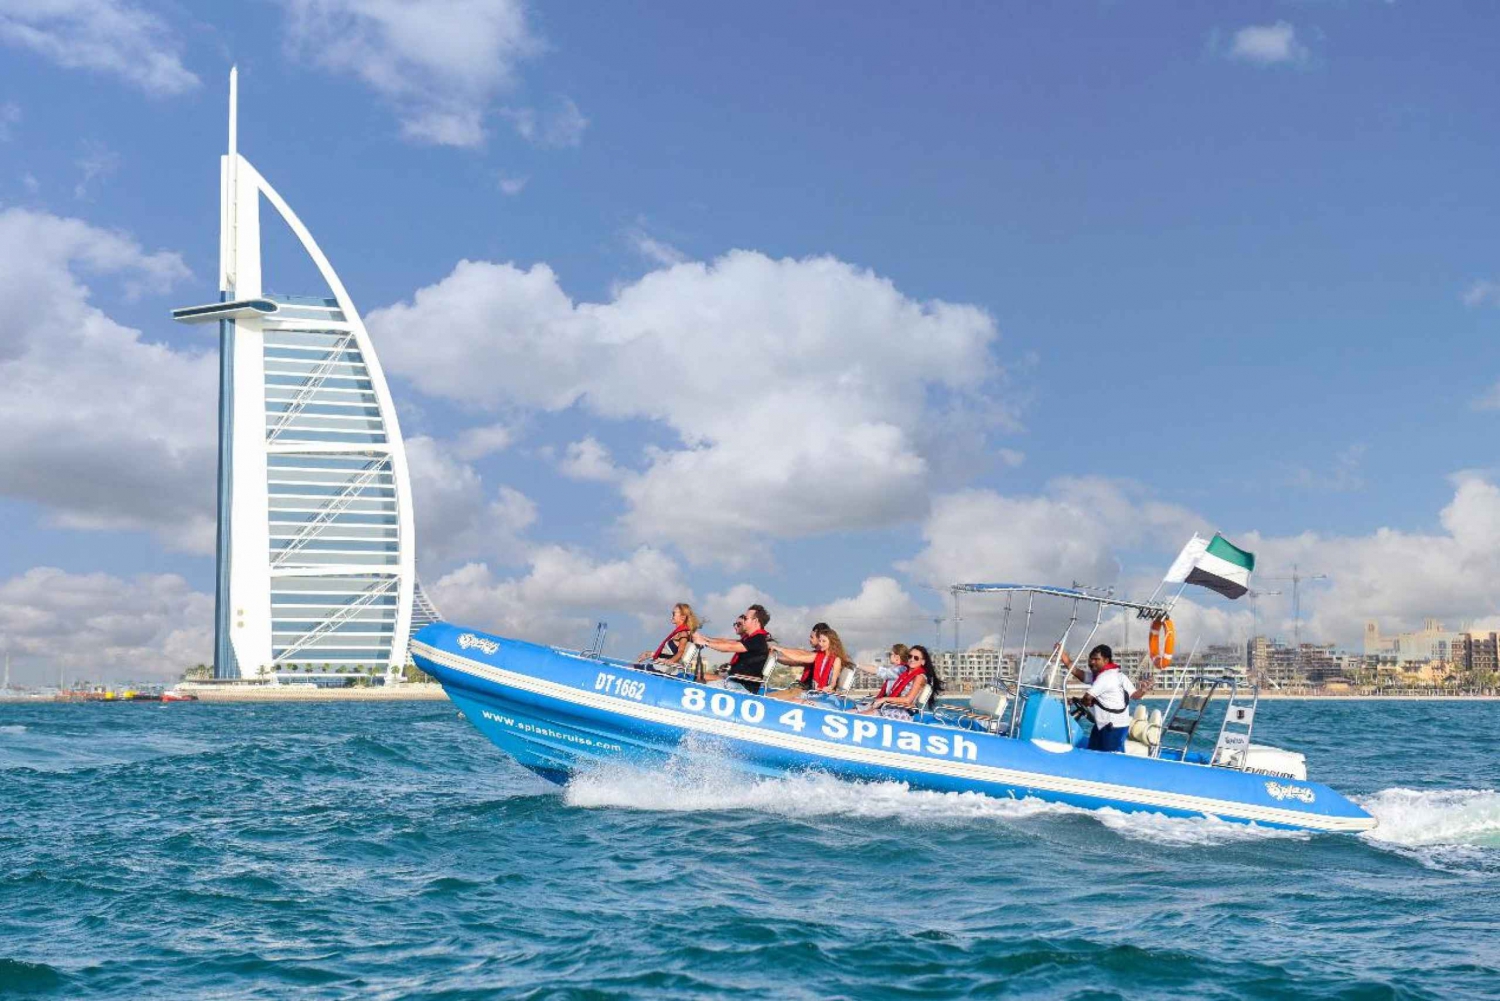 Dubai: Marina, Atlantis & Burj Al Arab per Schnellboot